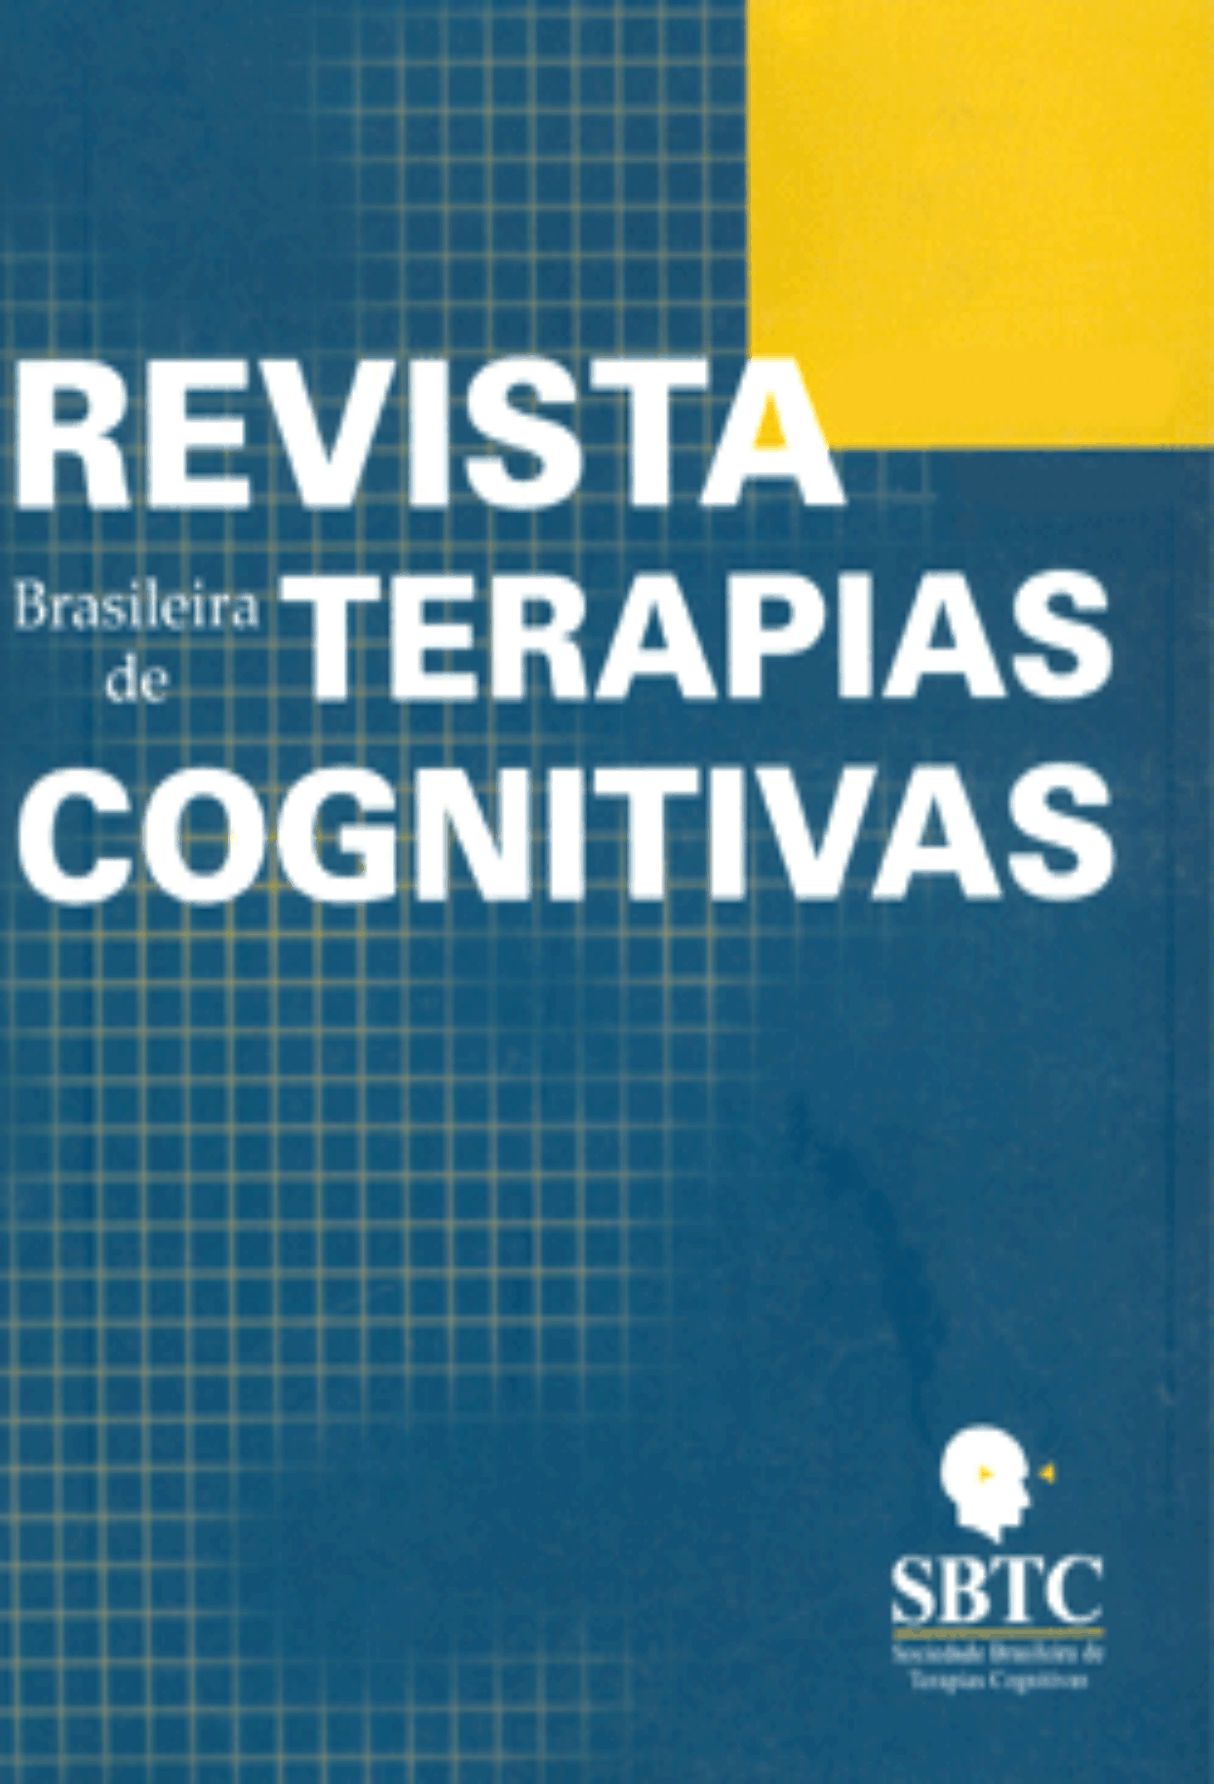 Capa: Revista Brasileira de Terapias Cognitivas